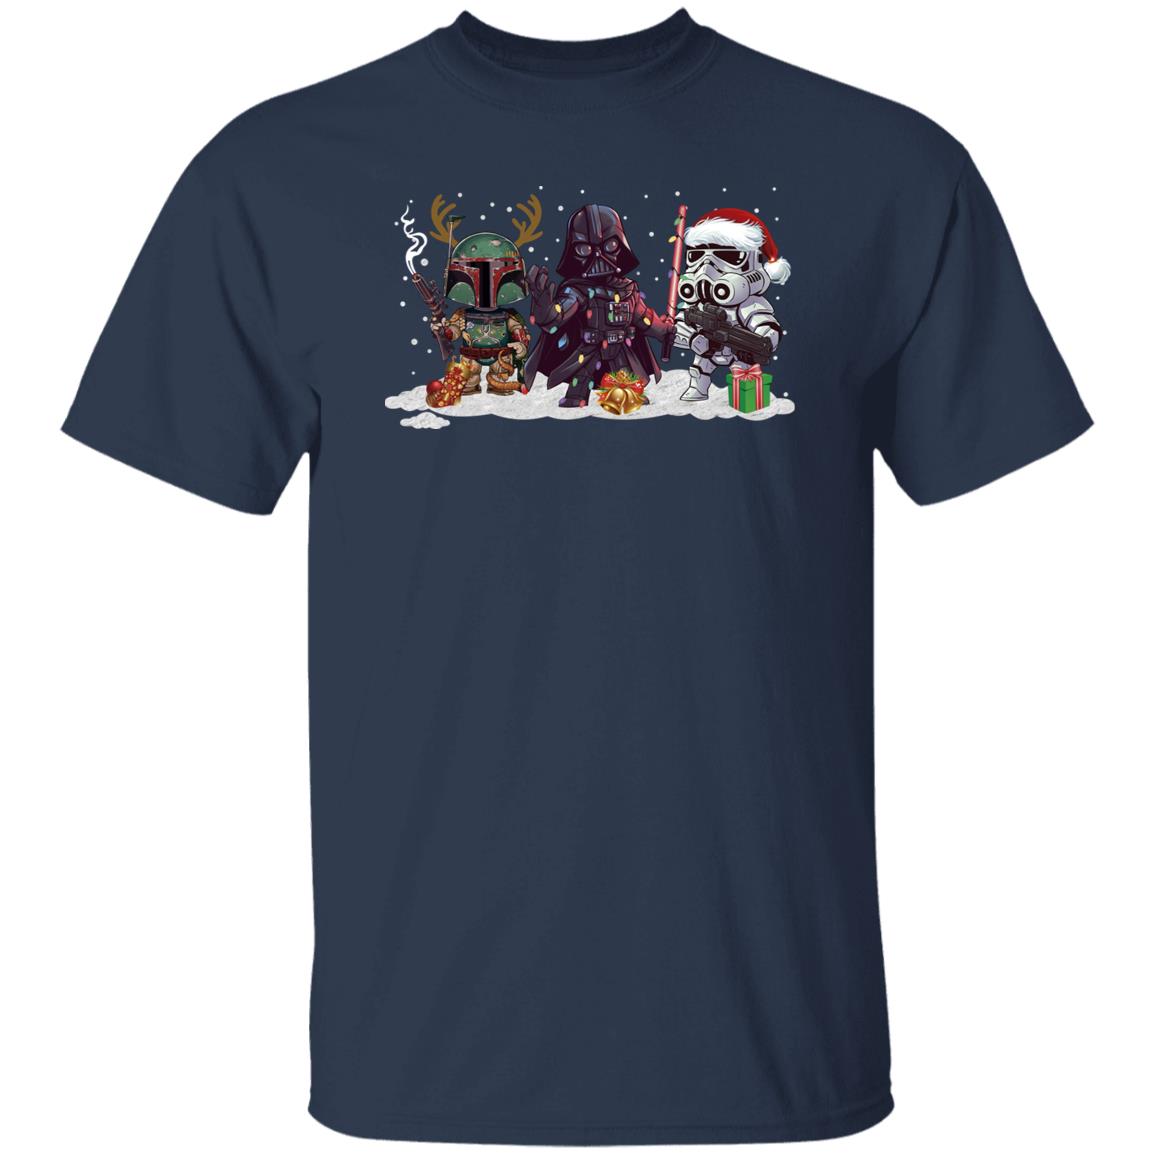 Boba Fett Darth Vader Stormtrooper Star Wars Christmas Shirt